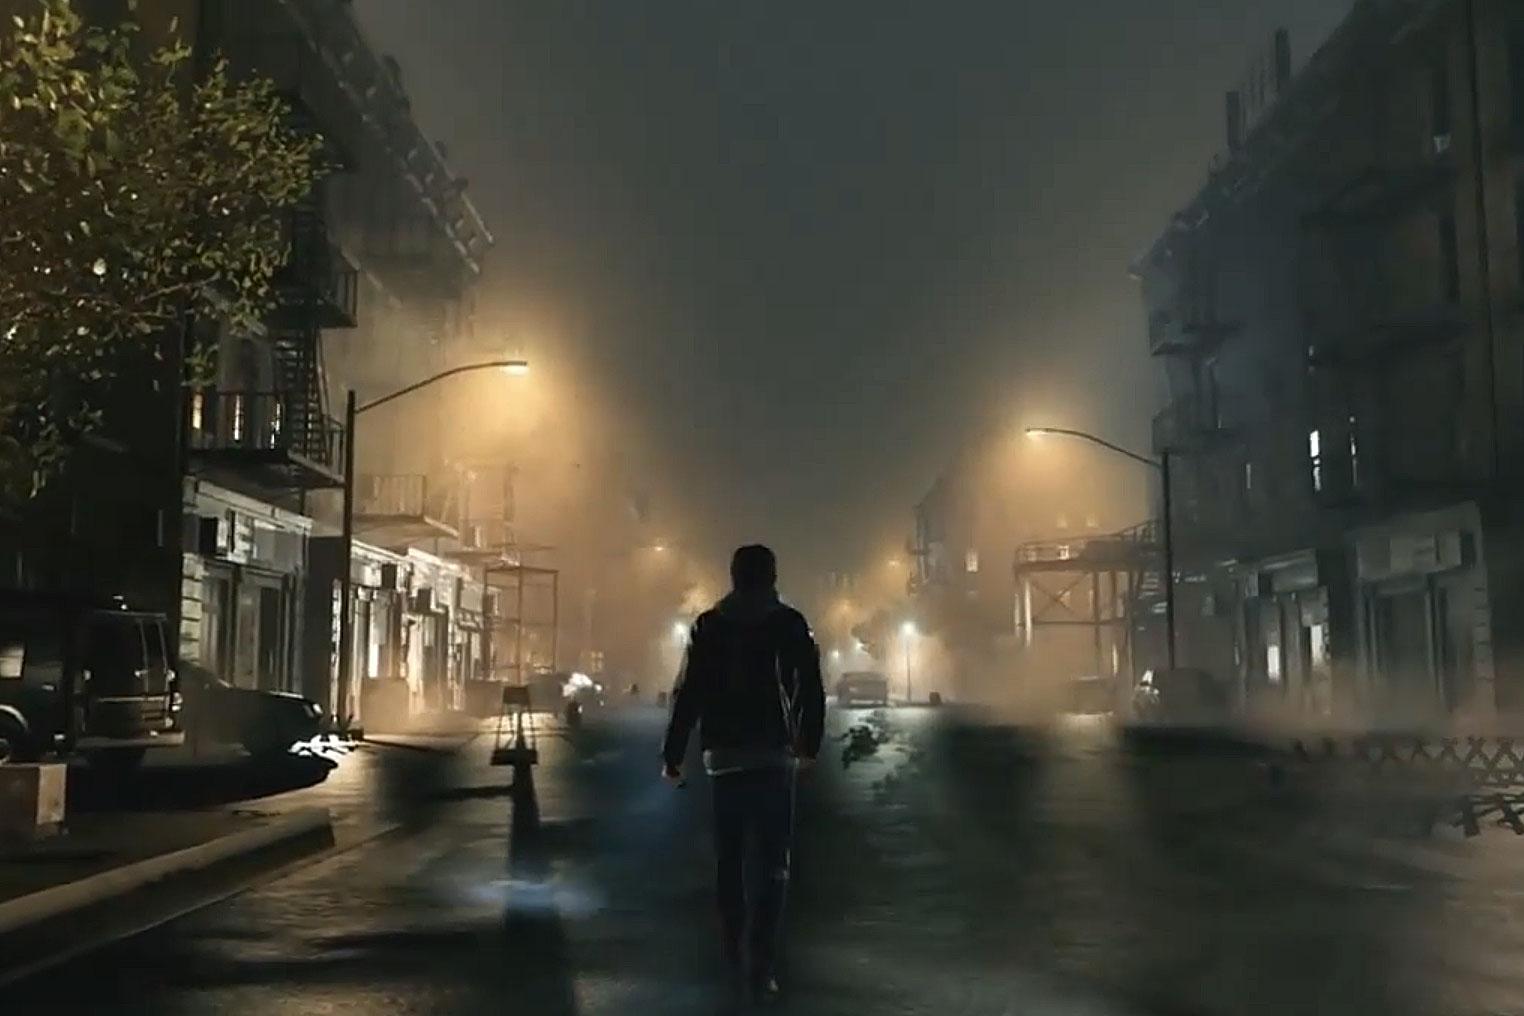 Hideo Kojima and Guillermo del Toro are making Silent Hills